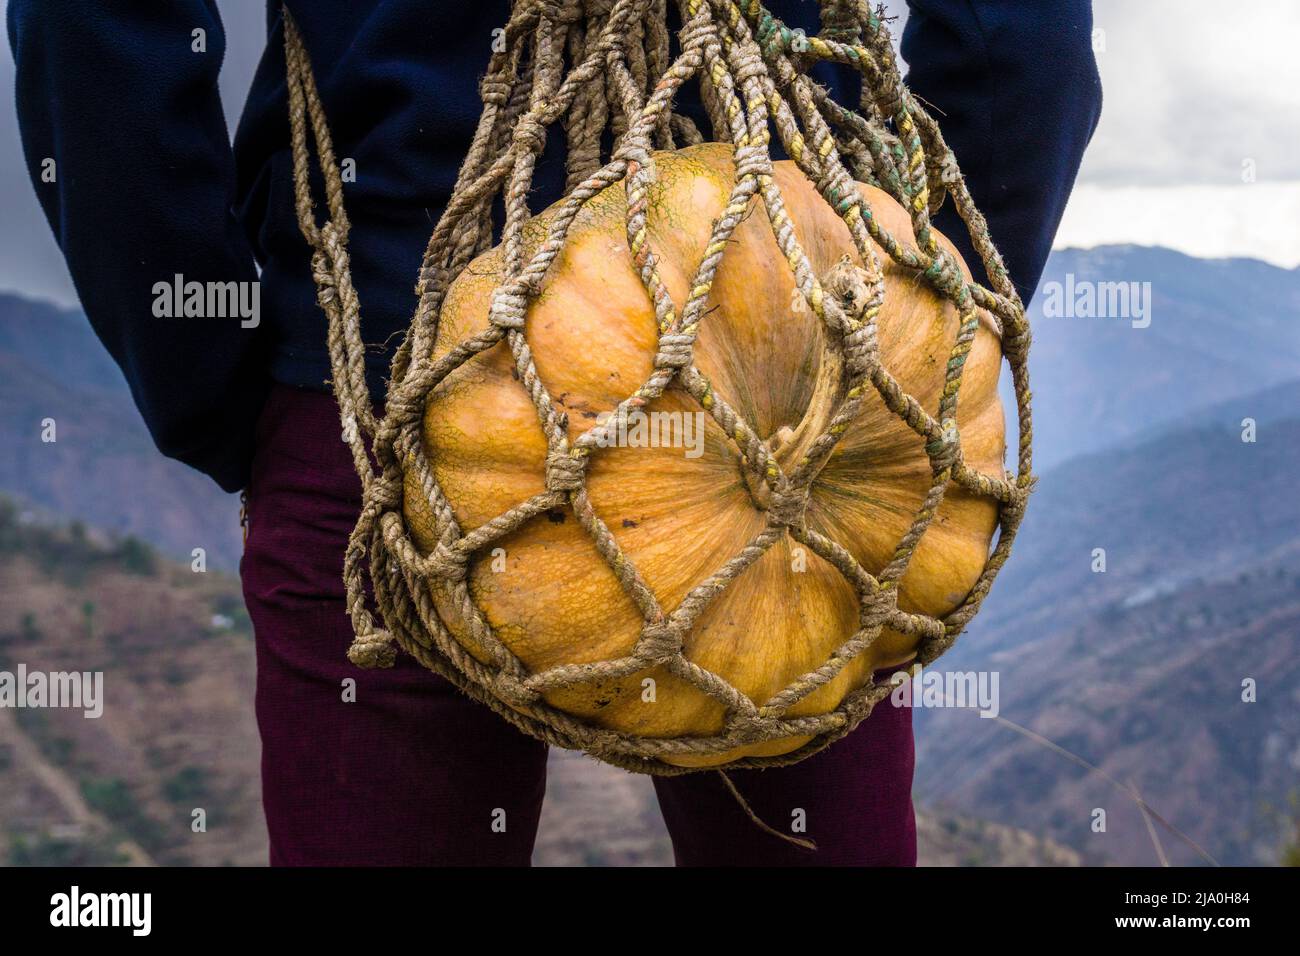 Una foto de primer plano de un hombre que llevaba una gran calabaza en una cesta de cuerda hecha a mano. Región del Himalaya de Uttarakhand India. Foto de stock